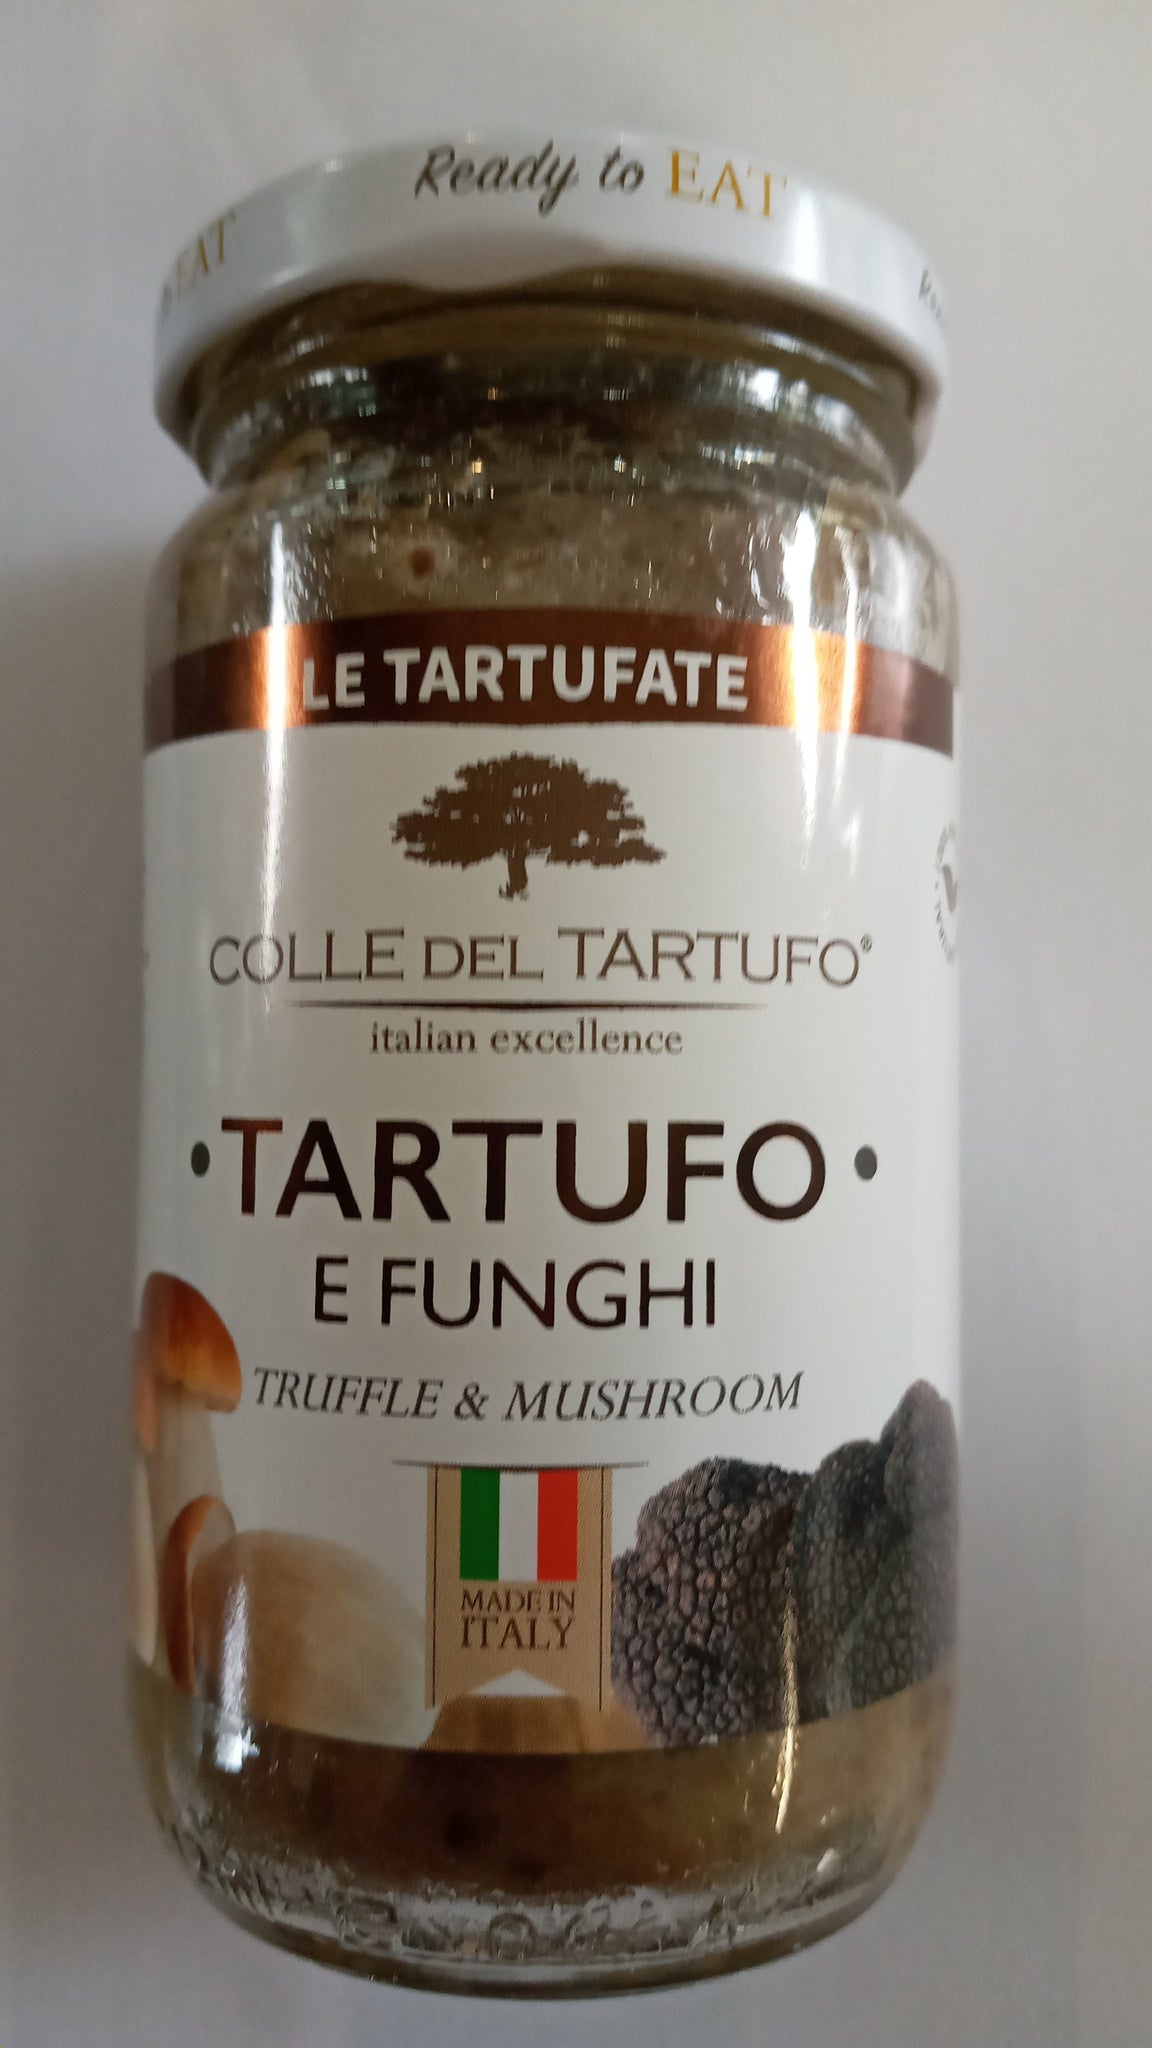 La Tartufate Truffle and Mushroom Pesto 180g